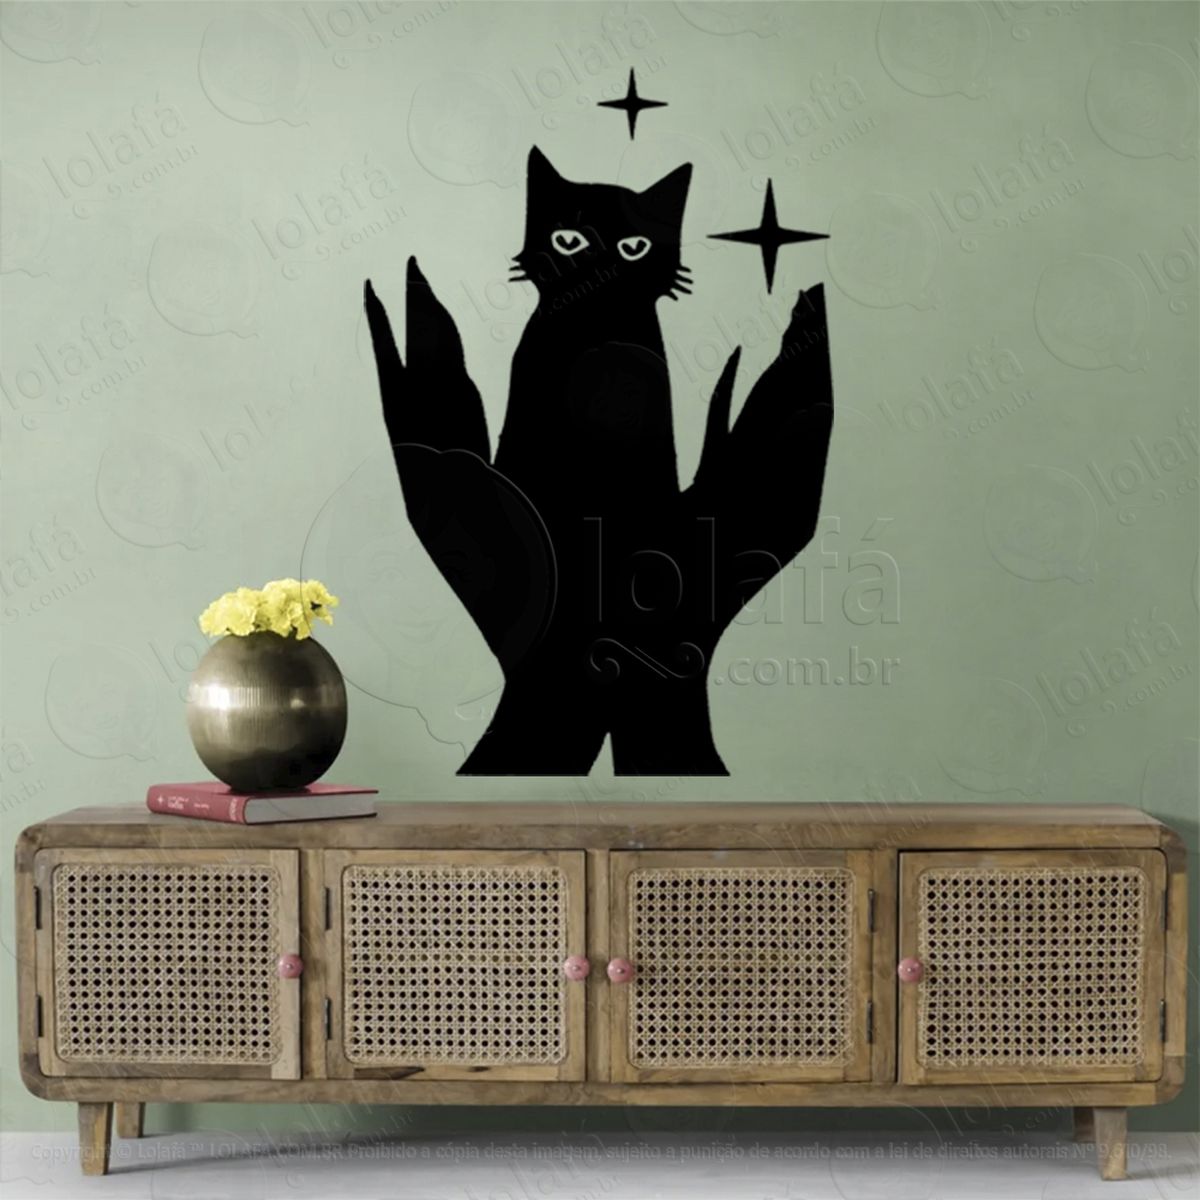 mãos segurando gato hands and cat adesivo de parede decorativo para casa, sala, quarto, vidro e altar ocultista - mod:257